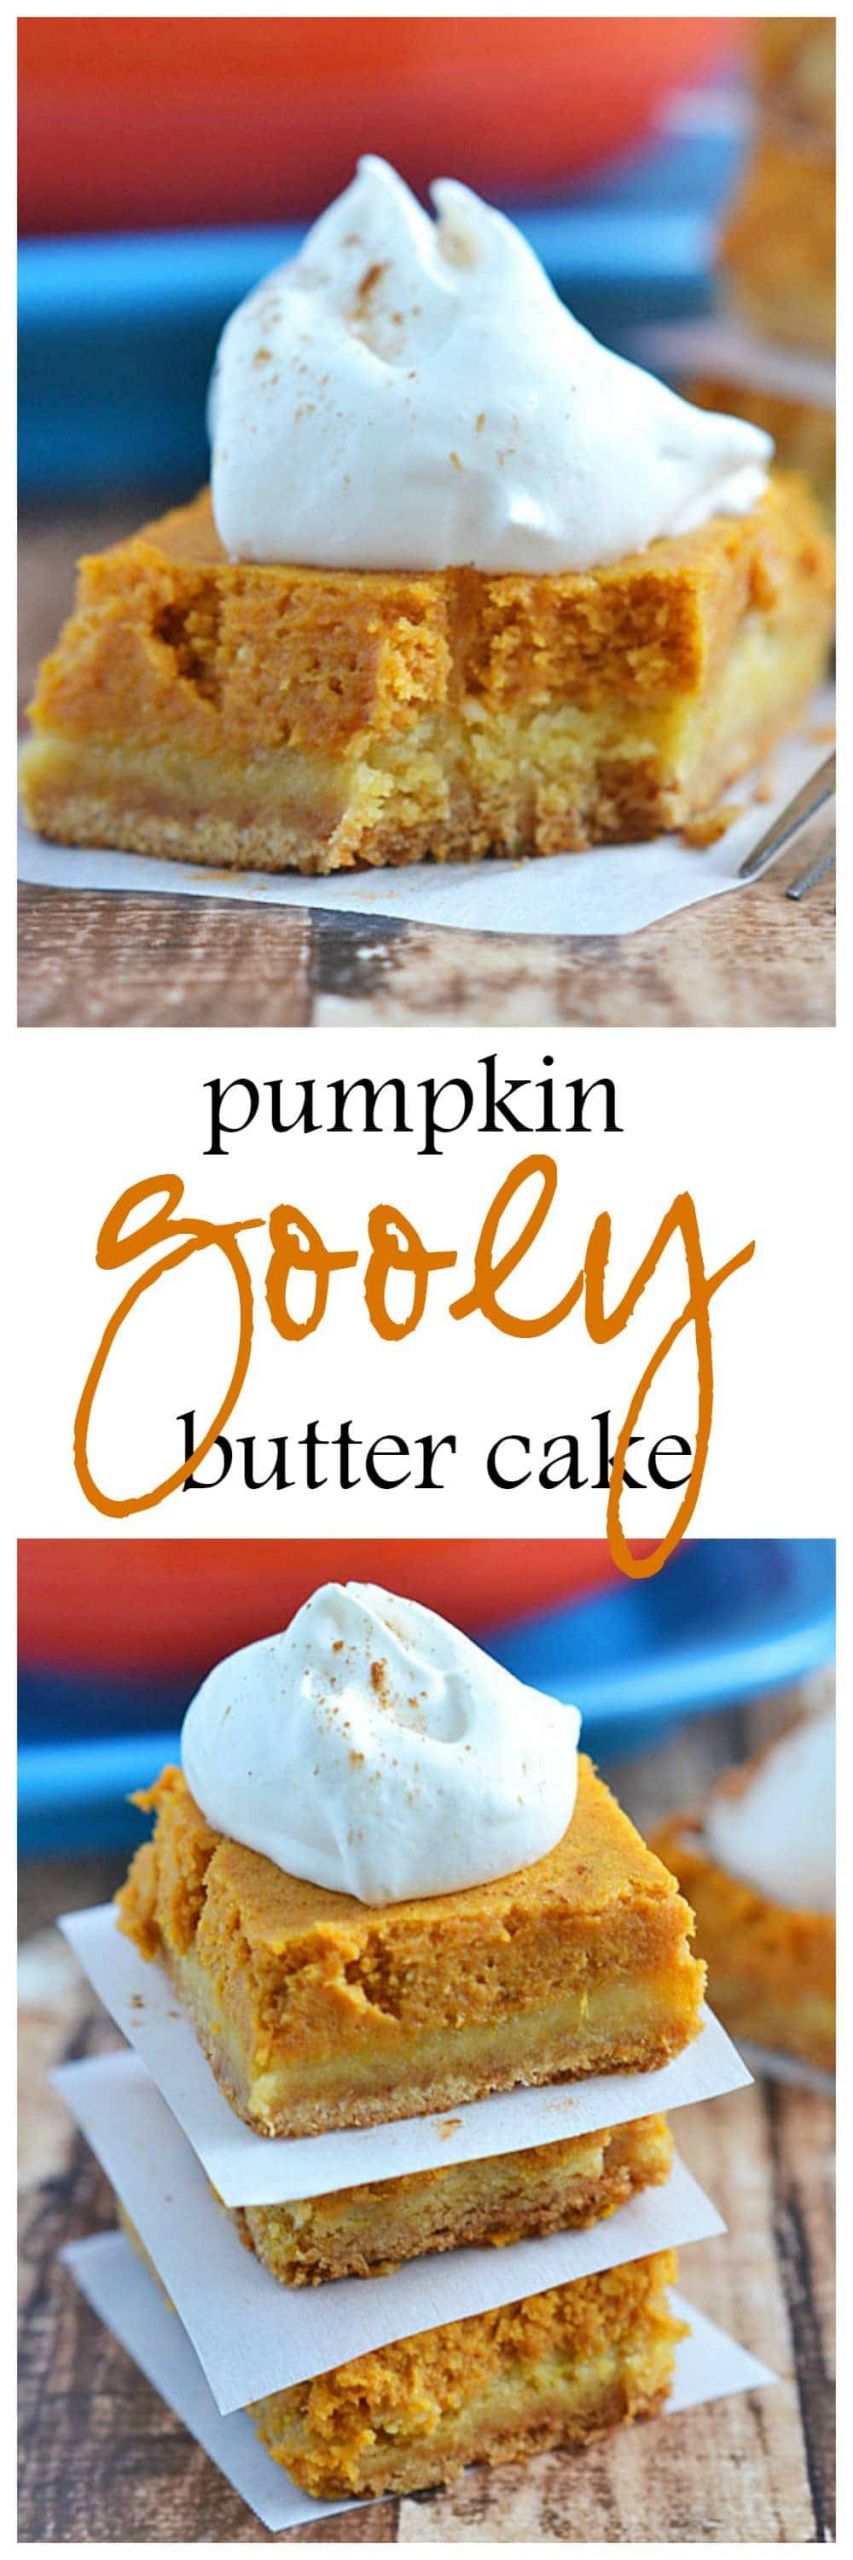 Pumpkin Gooey Butter Cake
 Pumpkin Gooey Butter Cake